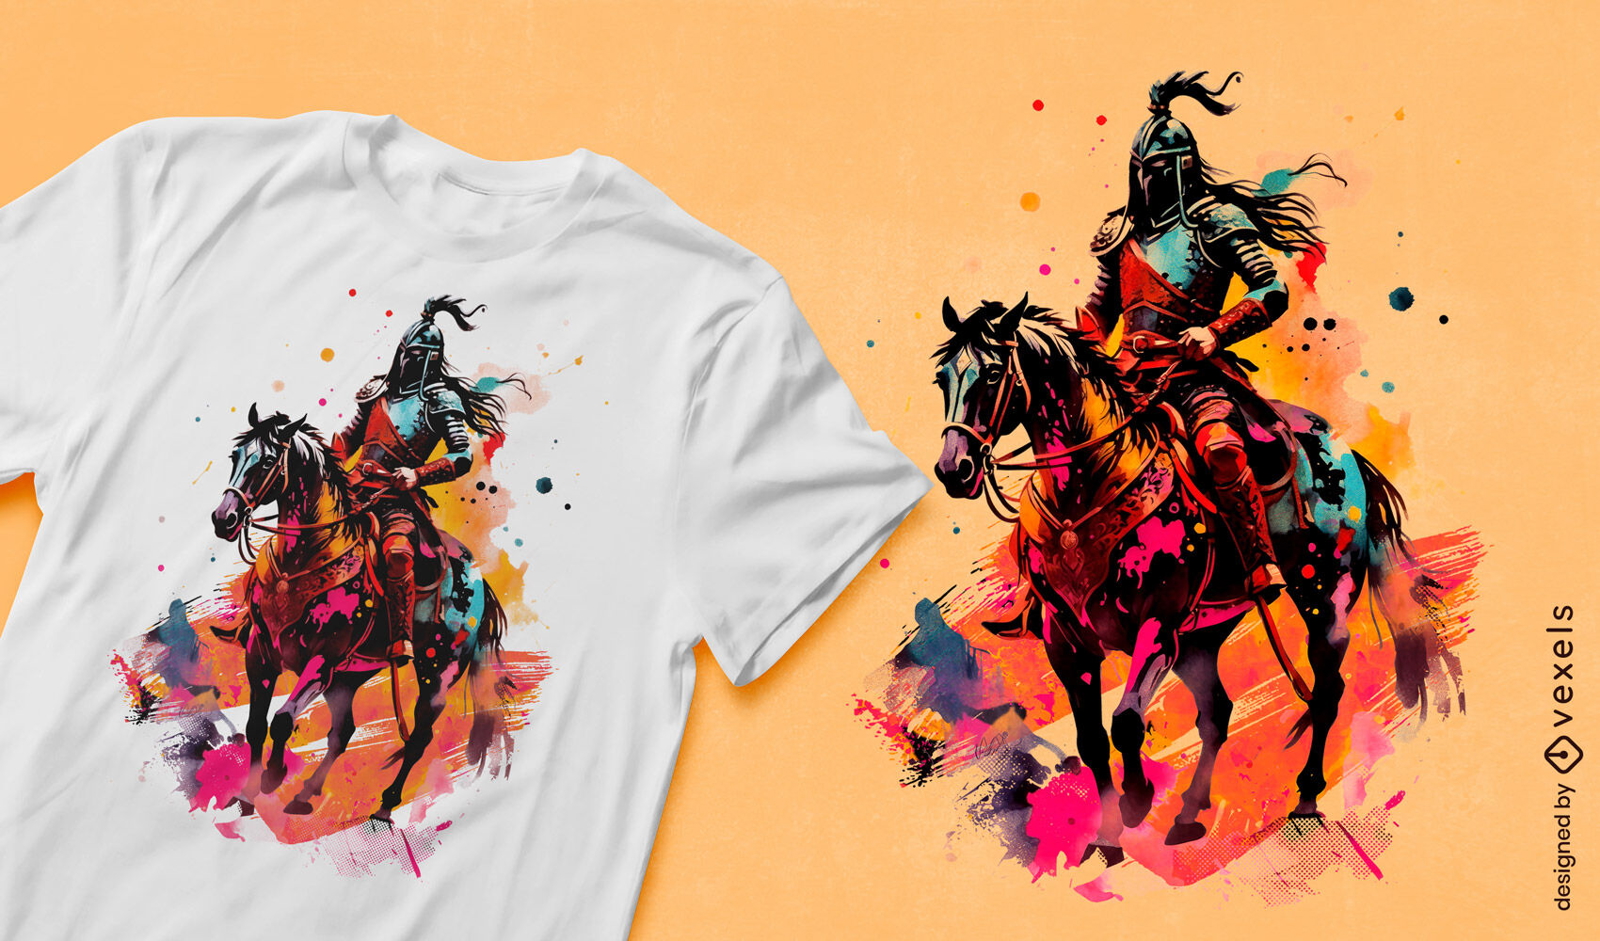 Ancient warrior watercolor t-shirt design